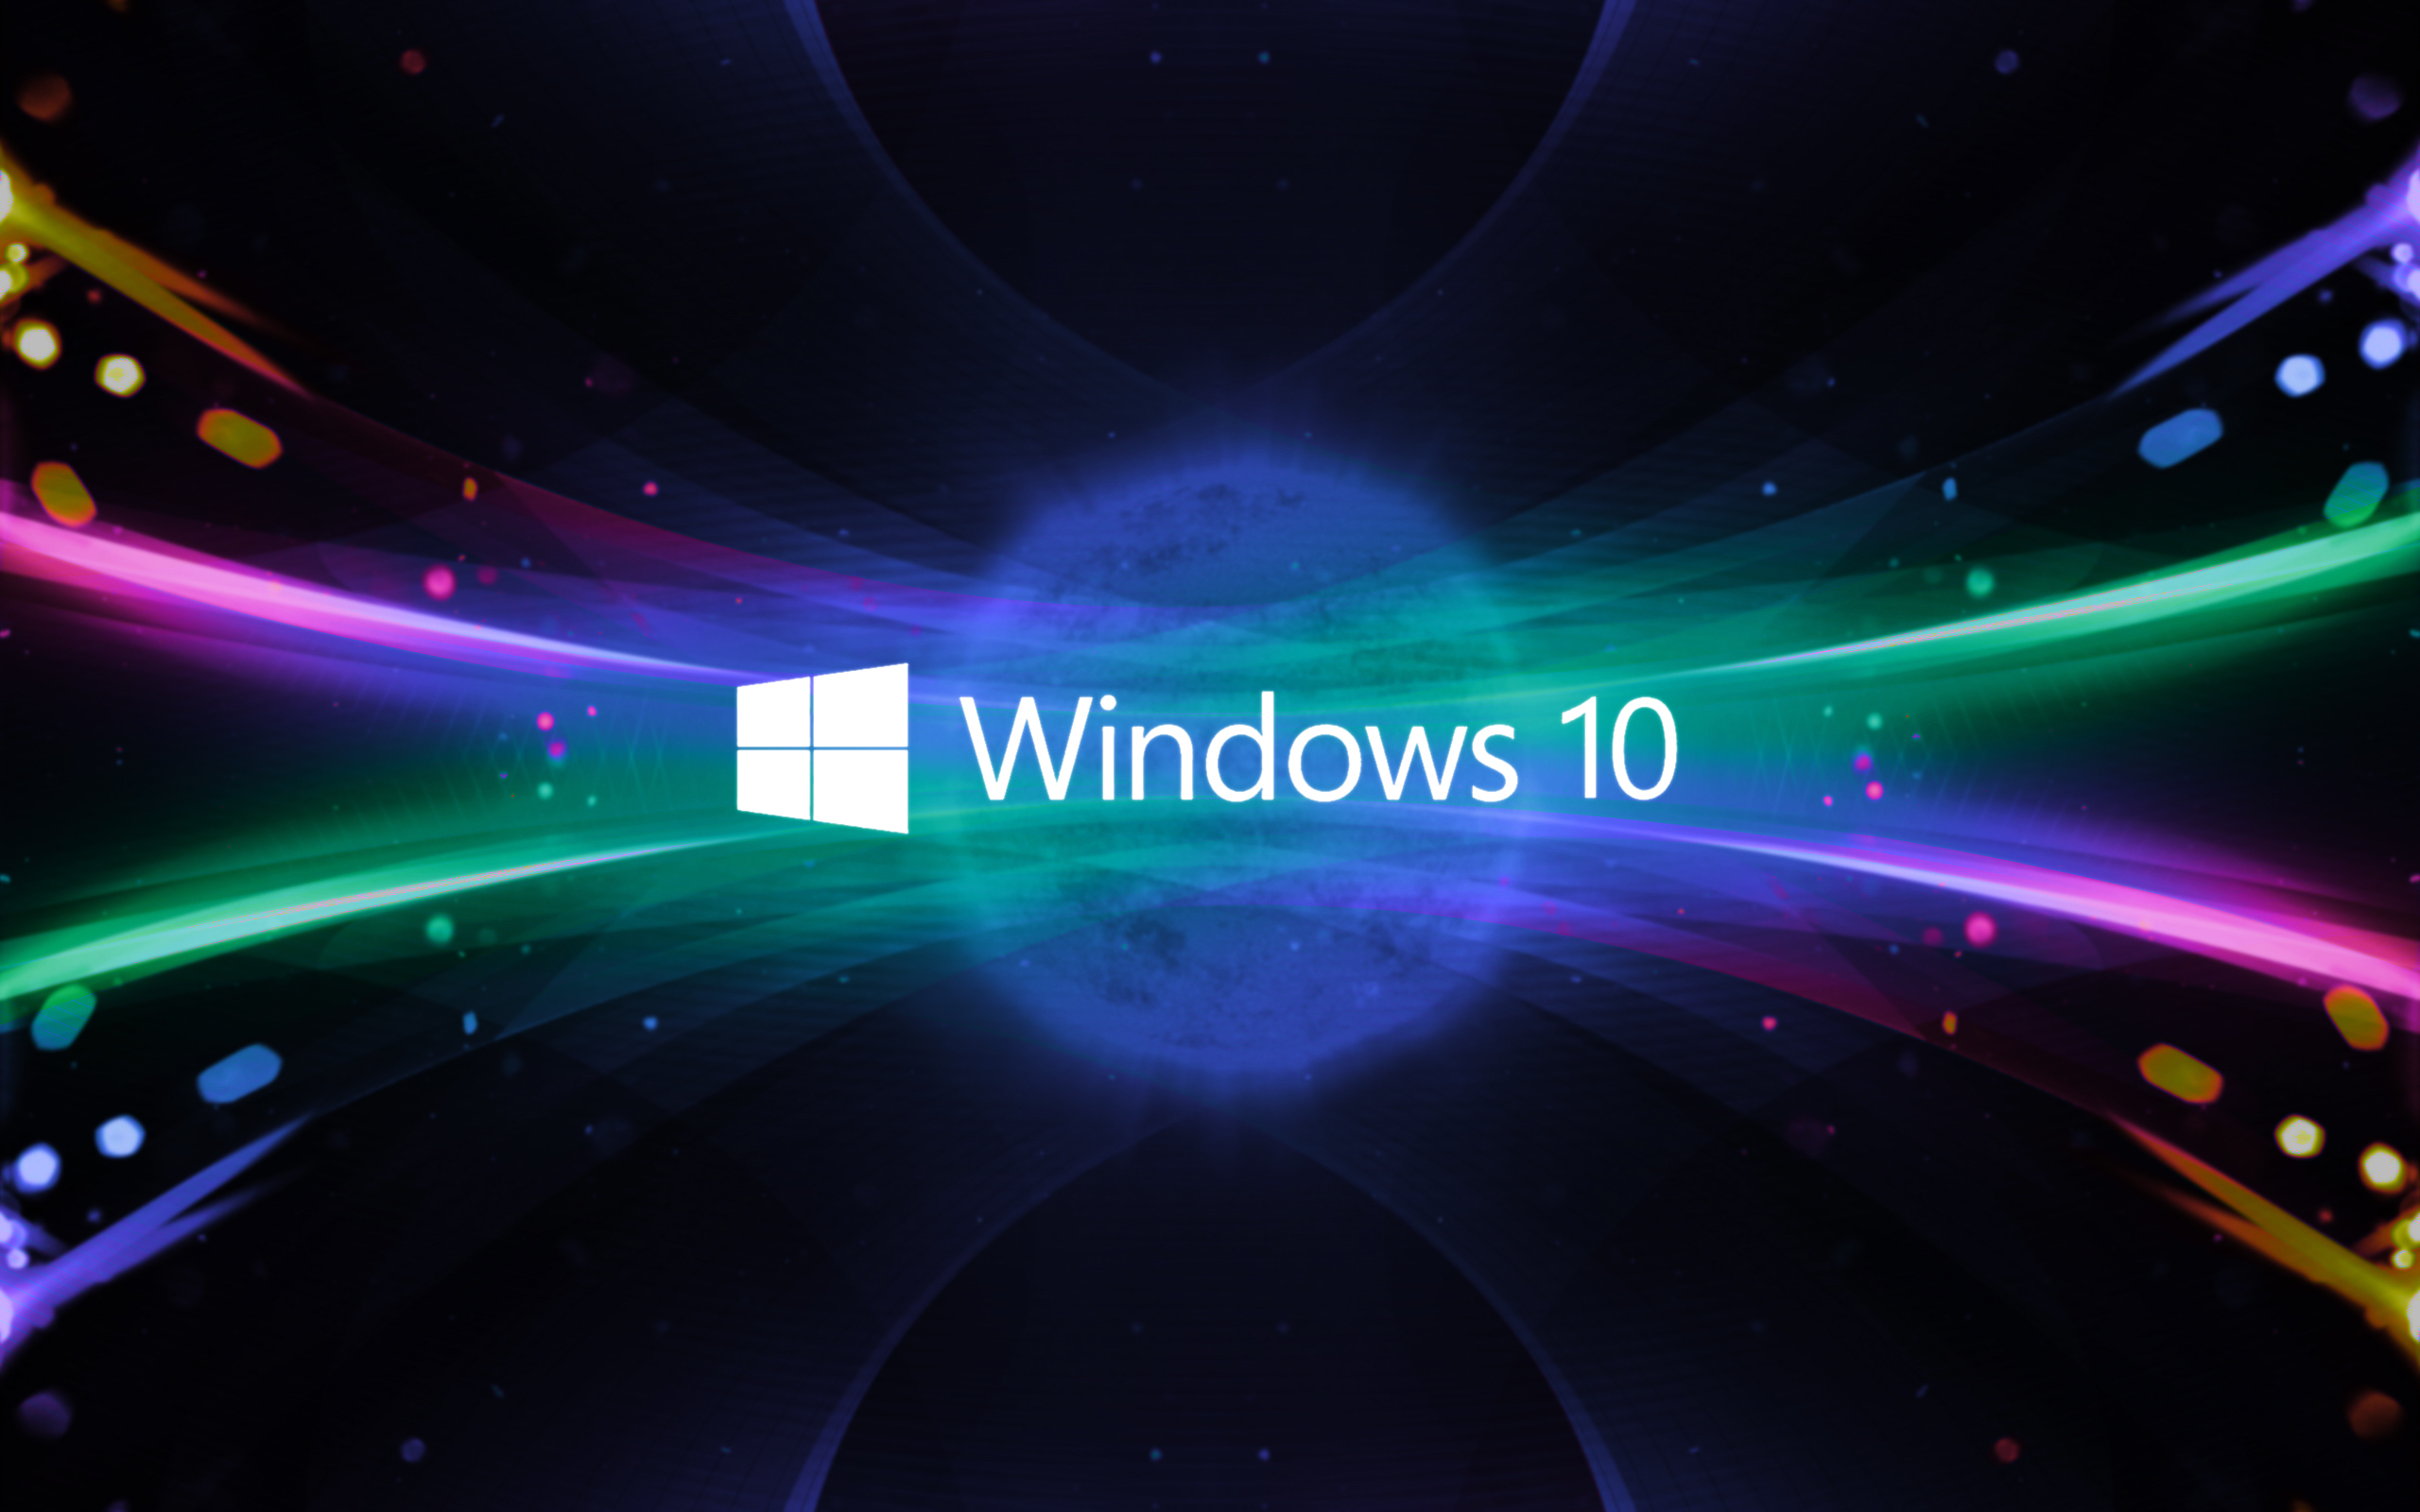 Download hình nền Windows 10: Không cần phải tốn thời gian để tìm kiếm hình nền đẹp cho máy tính của bạn nữa. Đơn giản chỉ cần download hình nền Windows 10 từ trang web của chúng tôi và bạn sẽ sở hữu ngay một bộ sưu tập hình nền hoàn hảo để làm cho máy tính của bạn trở nên đẹp hơn.